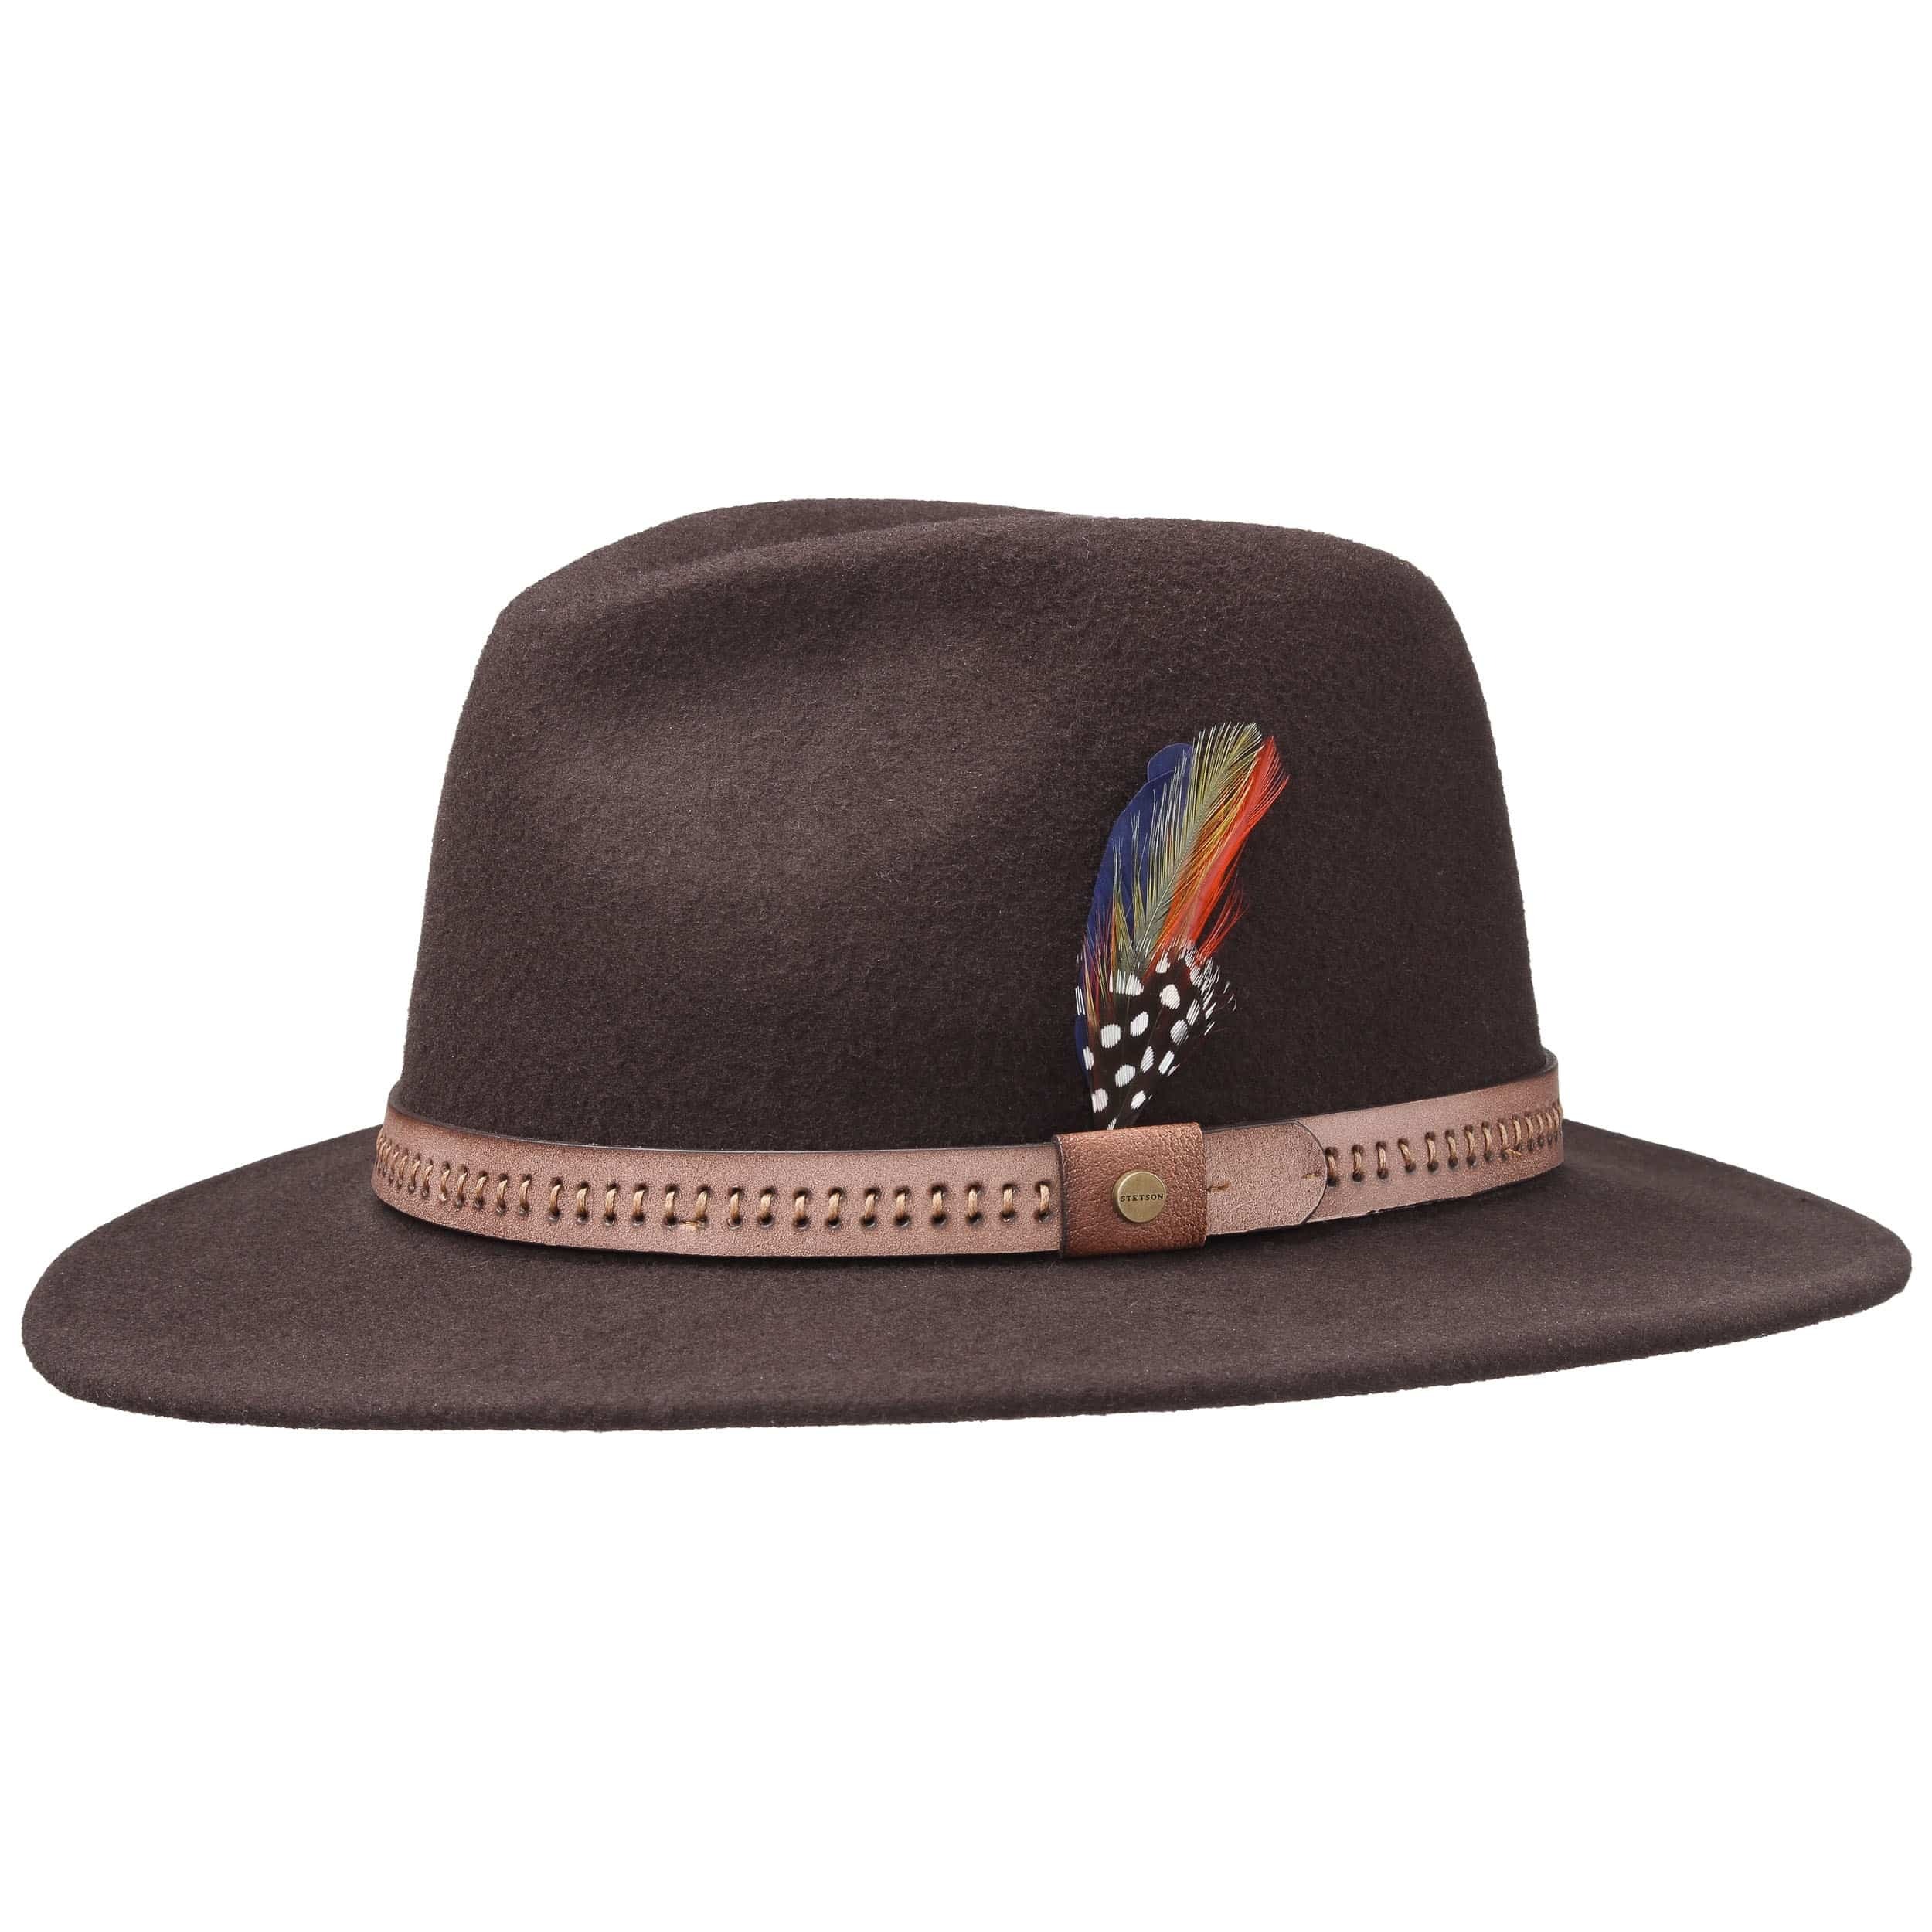 traveller hat